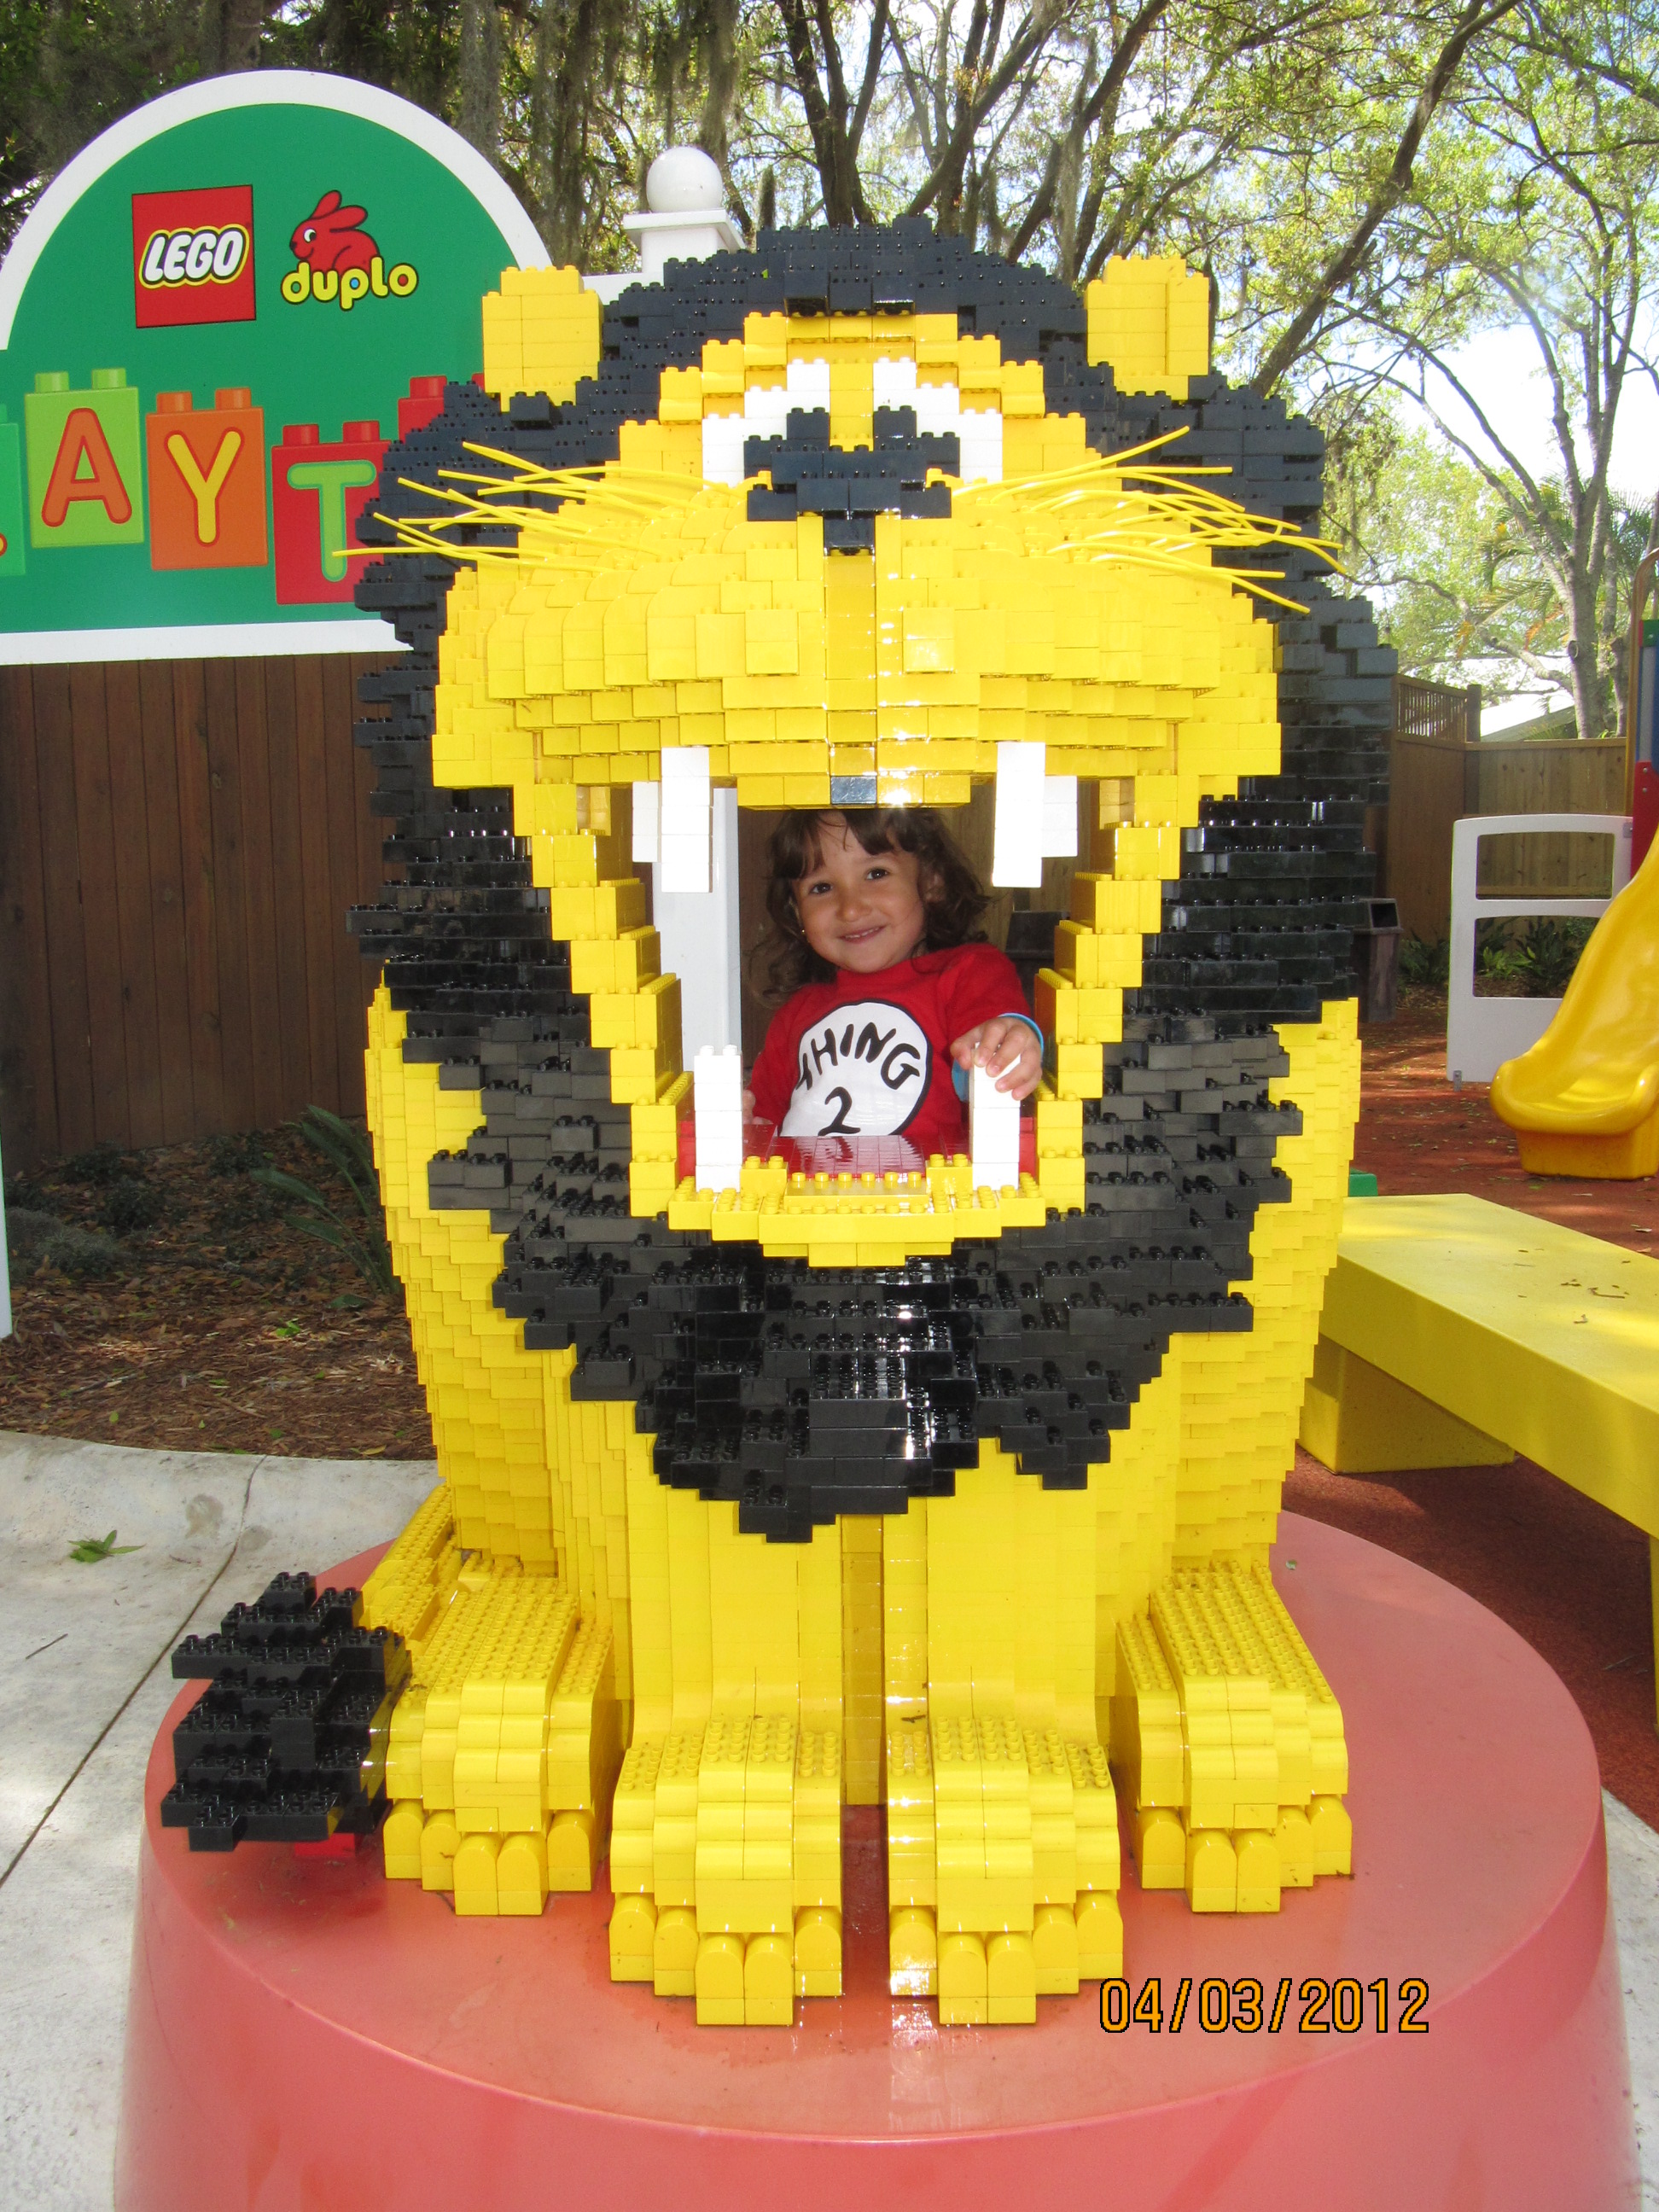 Na boca do leão de LEGO